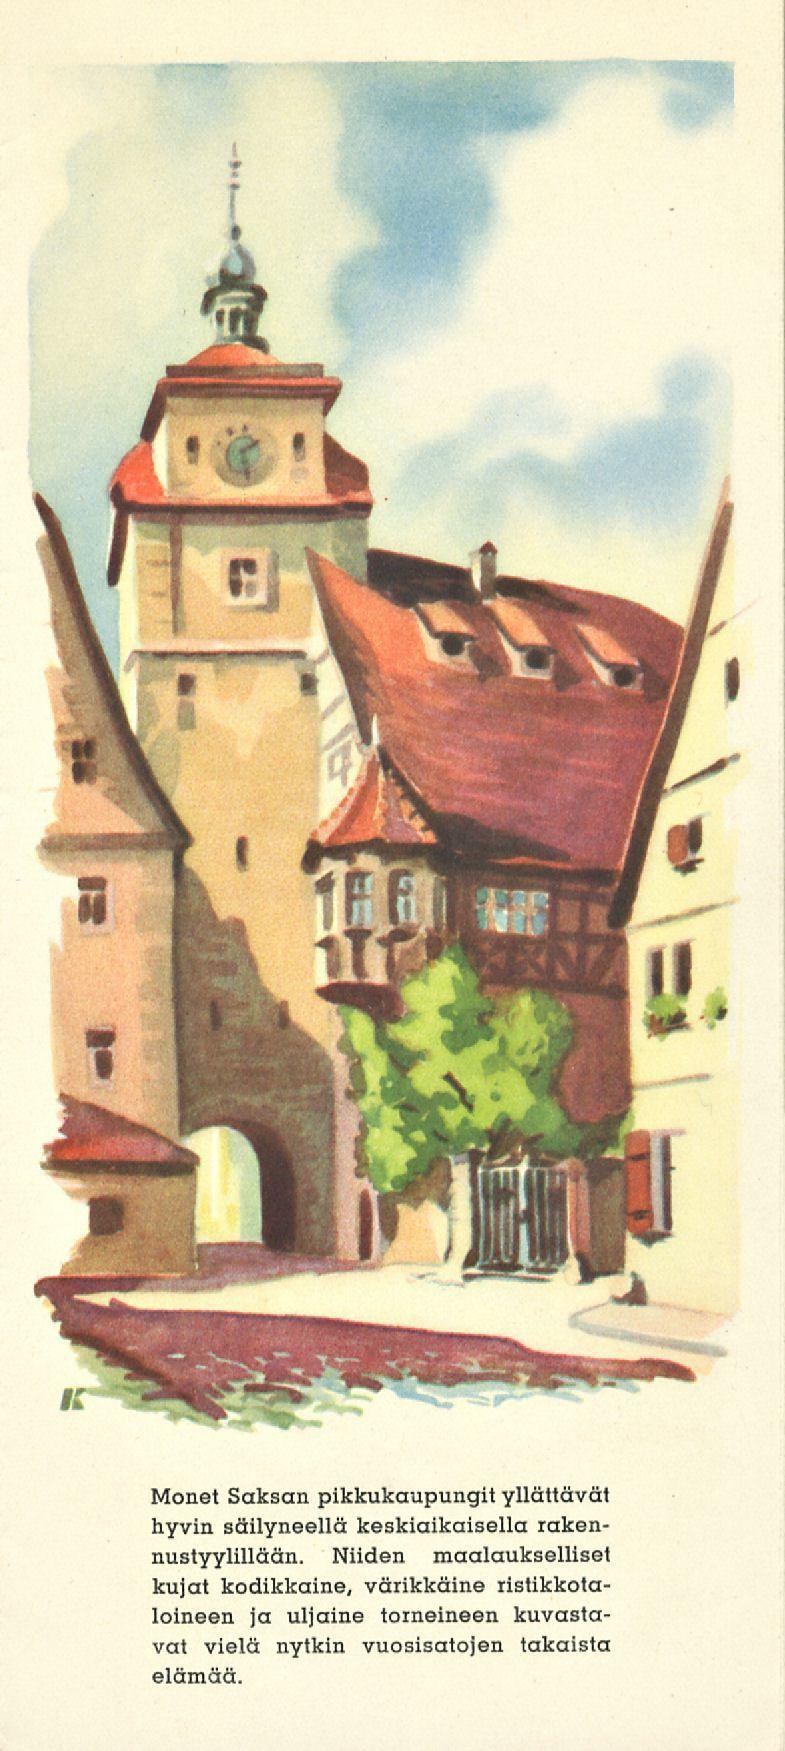 Monet Saksan pikkukaupungit yllättävät hyvin säilyneellä keskiaikaisella rakennustyylillään.